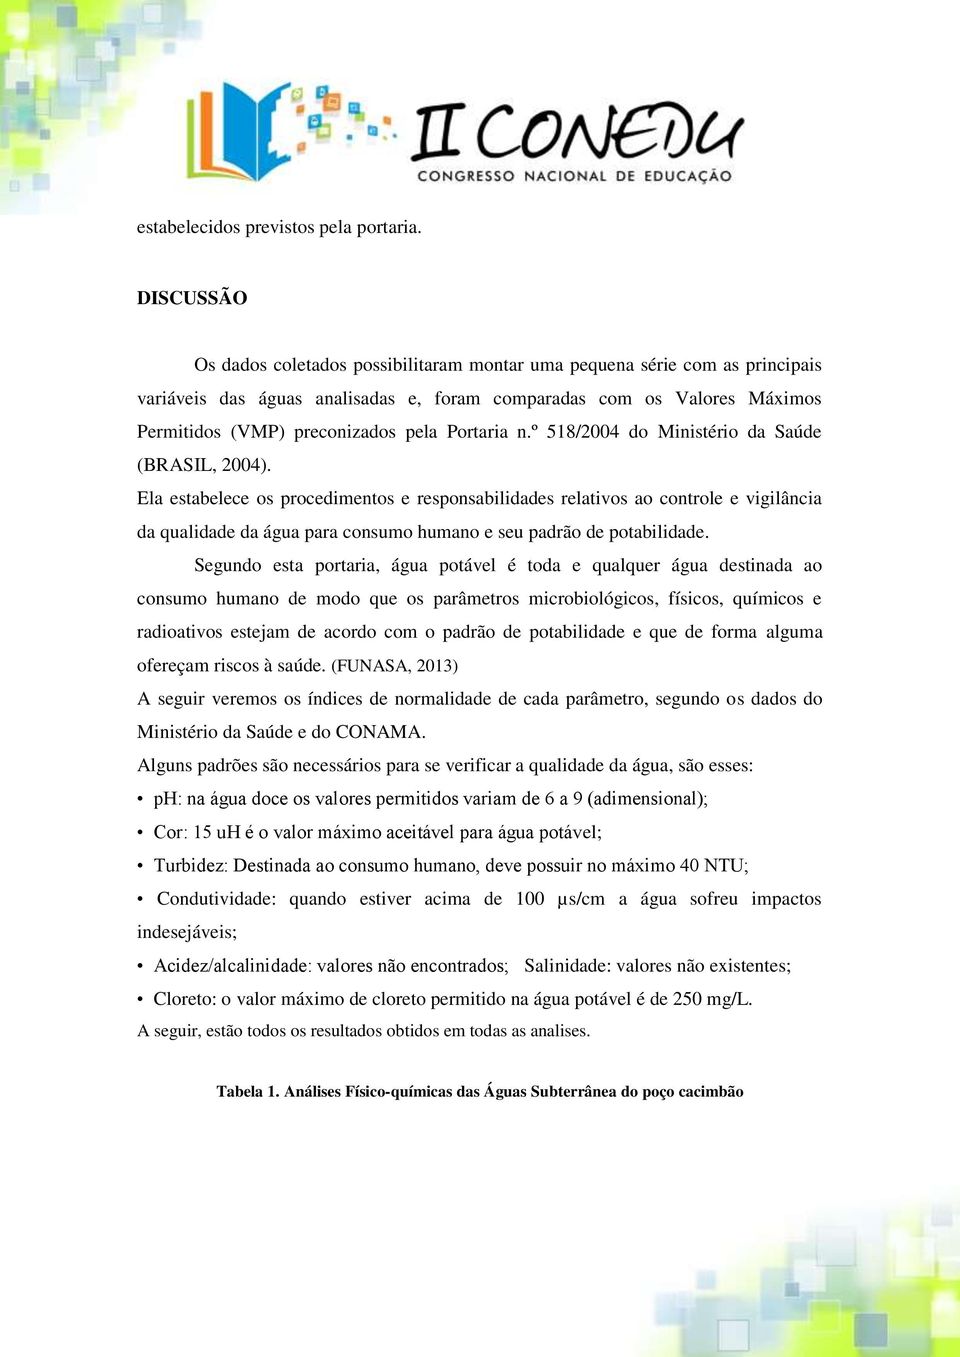 Portaria n.º 518/2004 do Ministério da Saúde (BRASIL, 2004).